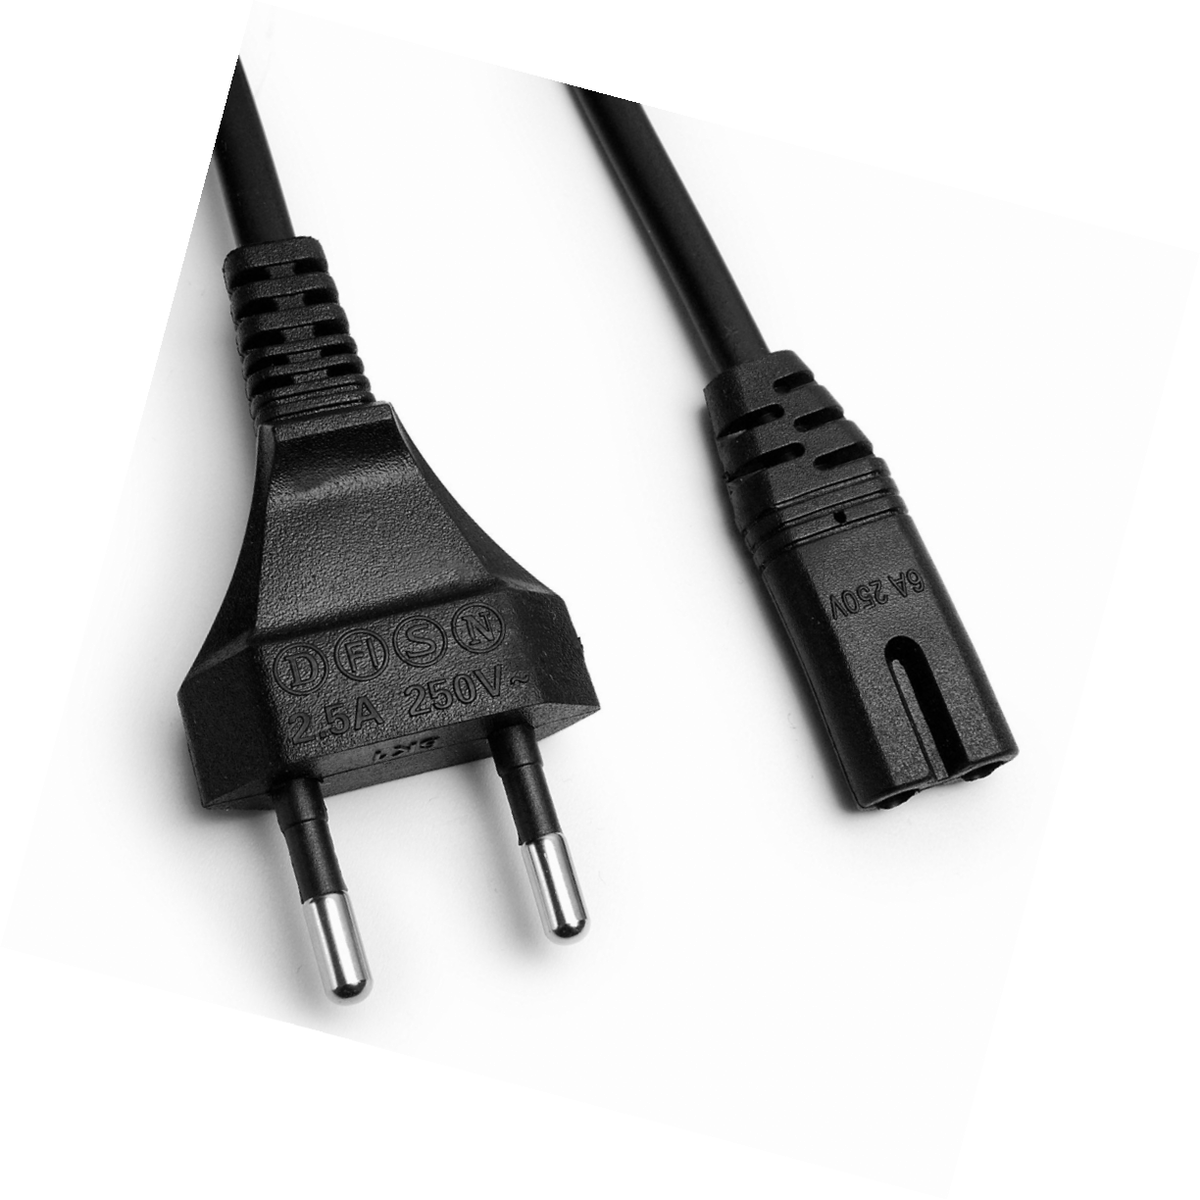 Mygadget Cable D'alimentation Fiche Euro 8 Droit 1,5m - Prise Double Femelle Pour Ecran Tele Ordinateur Radio Apple Tv Etc.  - Noir